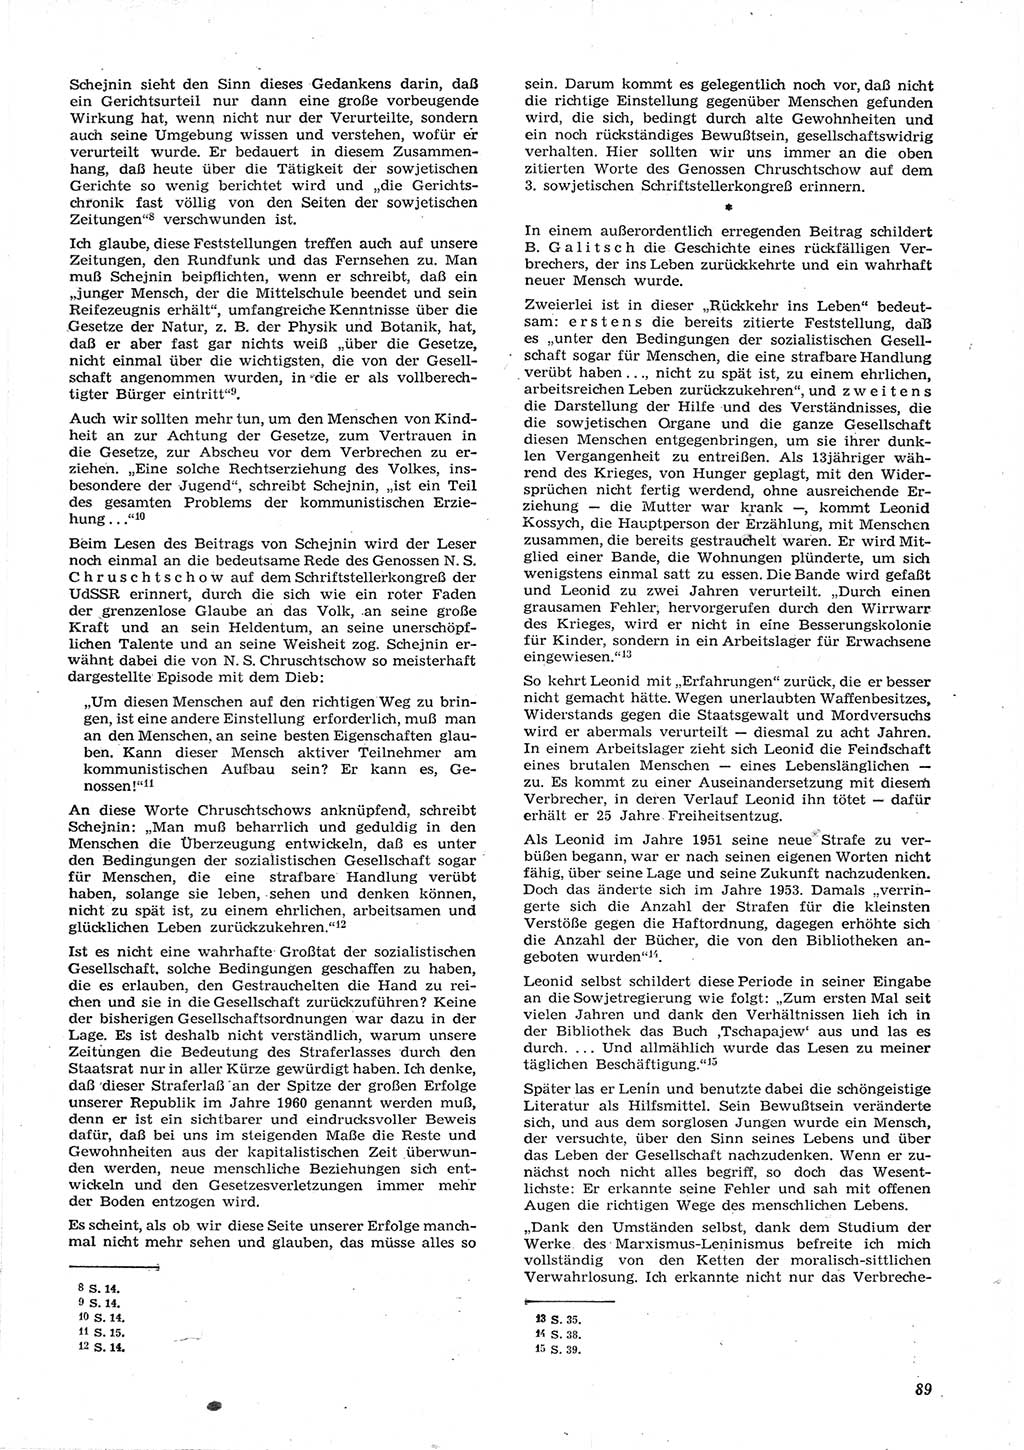 Neue Justiz (NJ), Zeitschrift für Recht und Rechtswissenschaft [Deutsche Demokratische Republik (DDR)], 15. Jahrgang 1961, Seite 89 (NJ DDR 1961, S. 89)